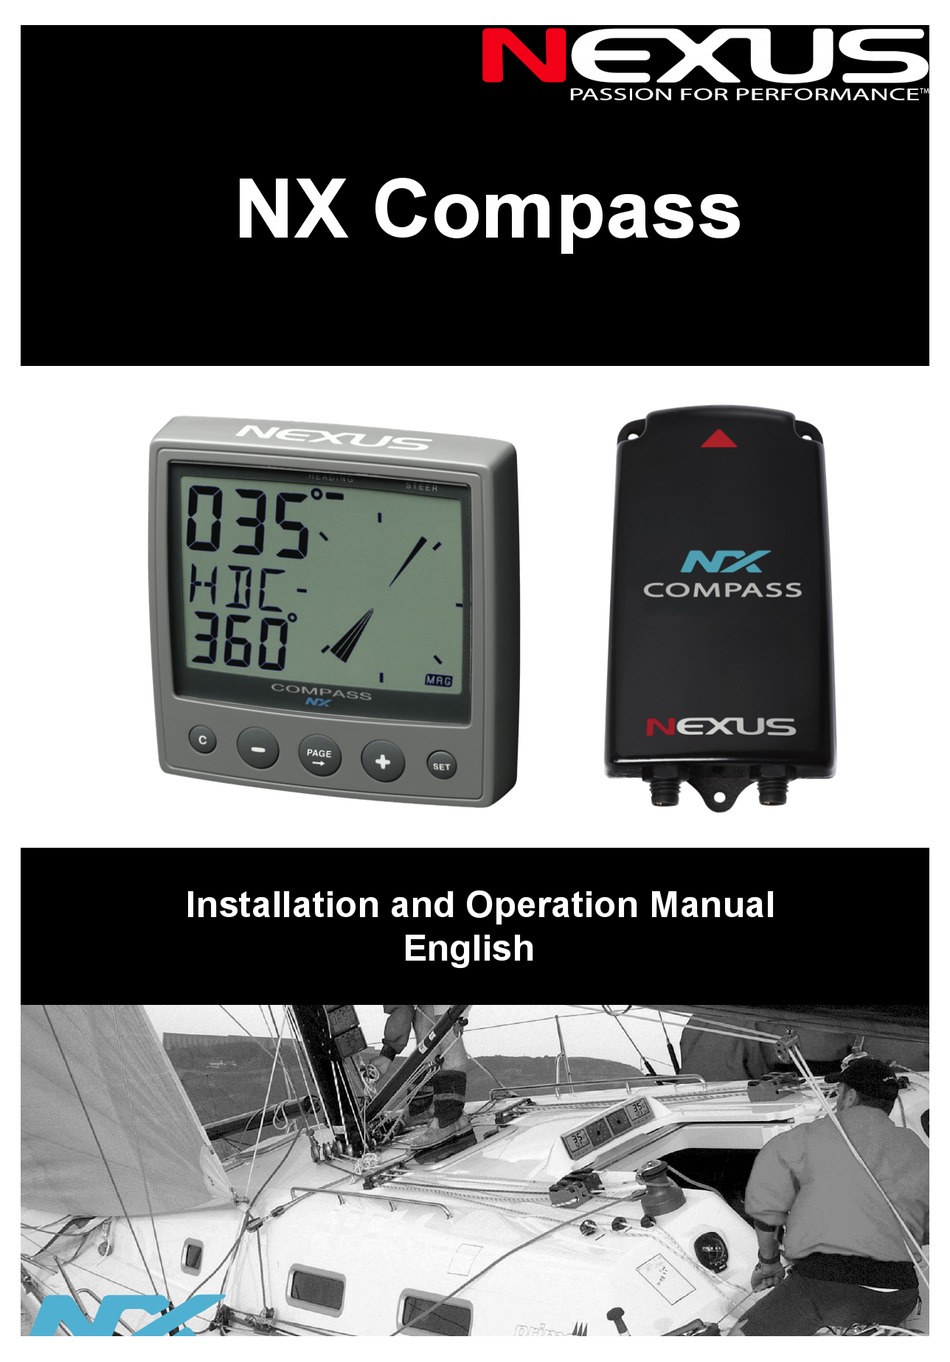 nexus manual download